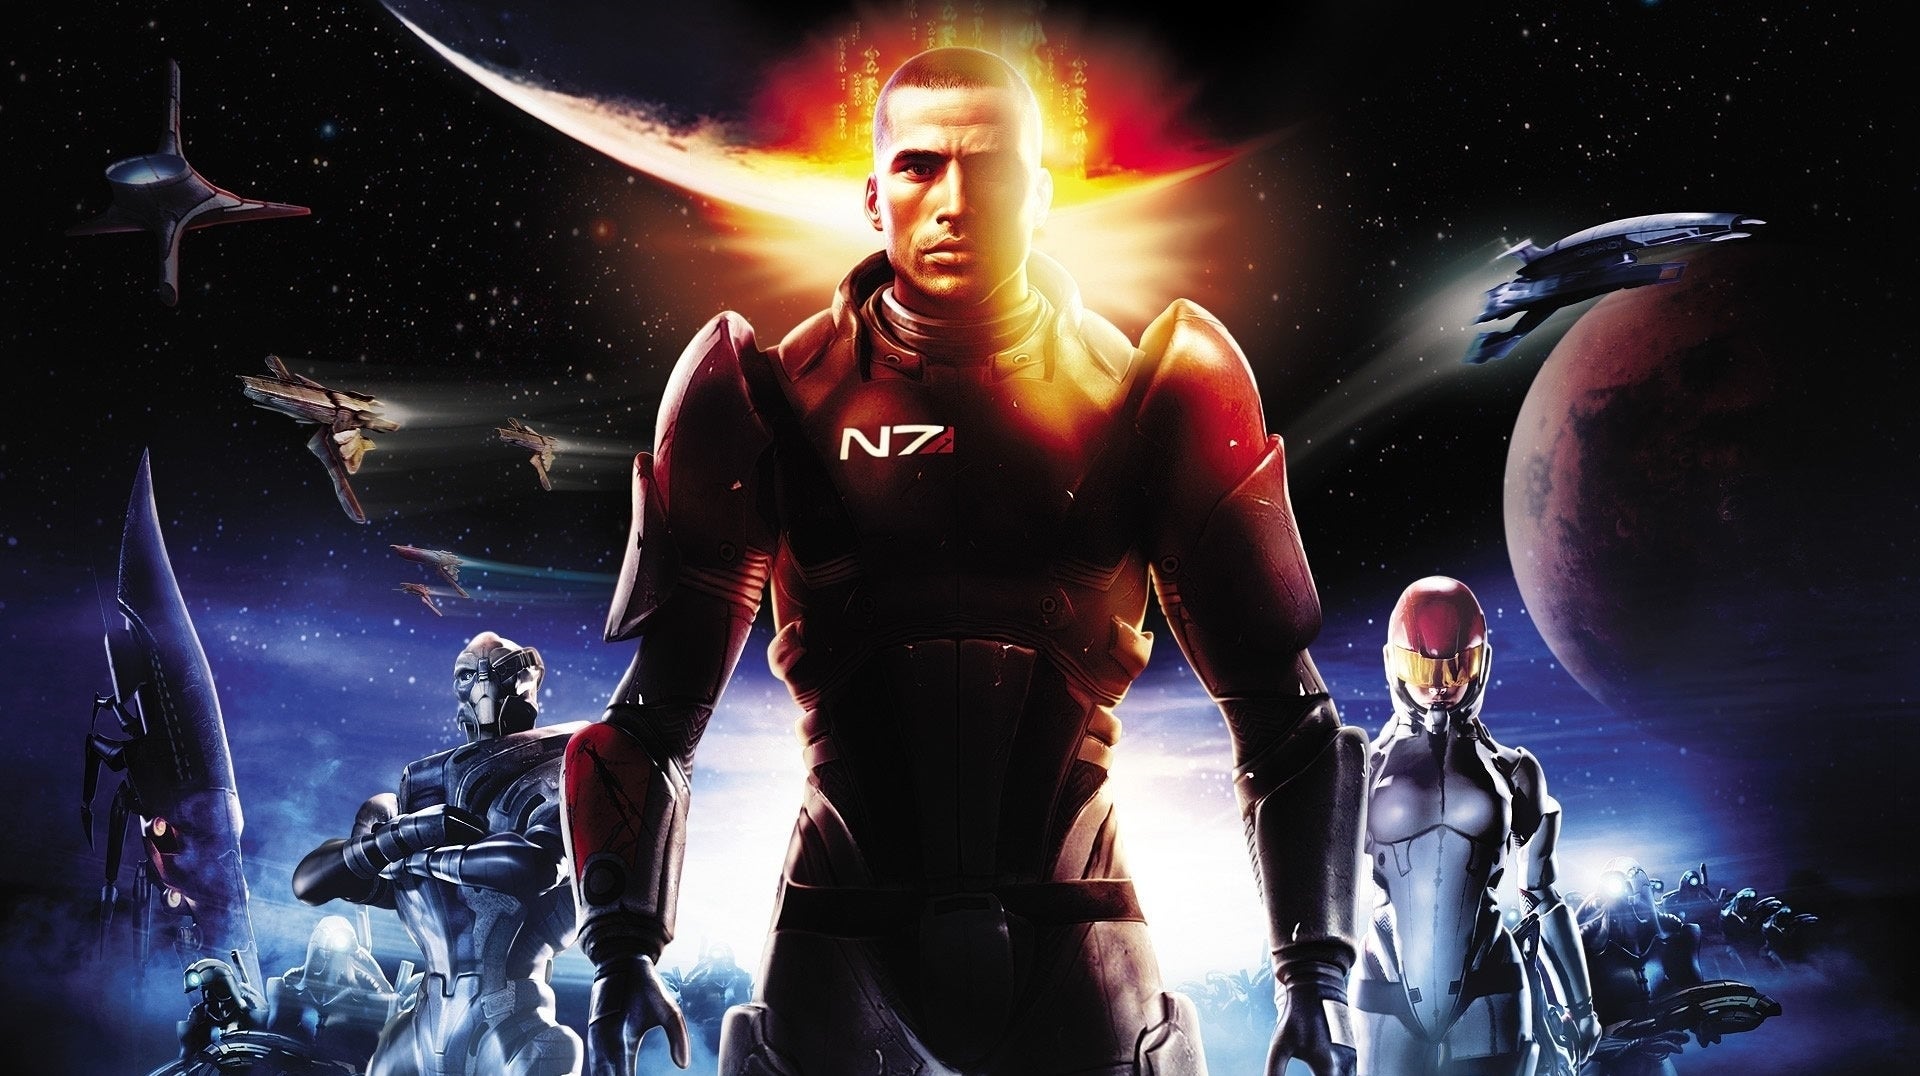 Immagine di Mass Effect sta per tornare in un remaster o in un remake della trilogia originale?